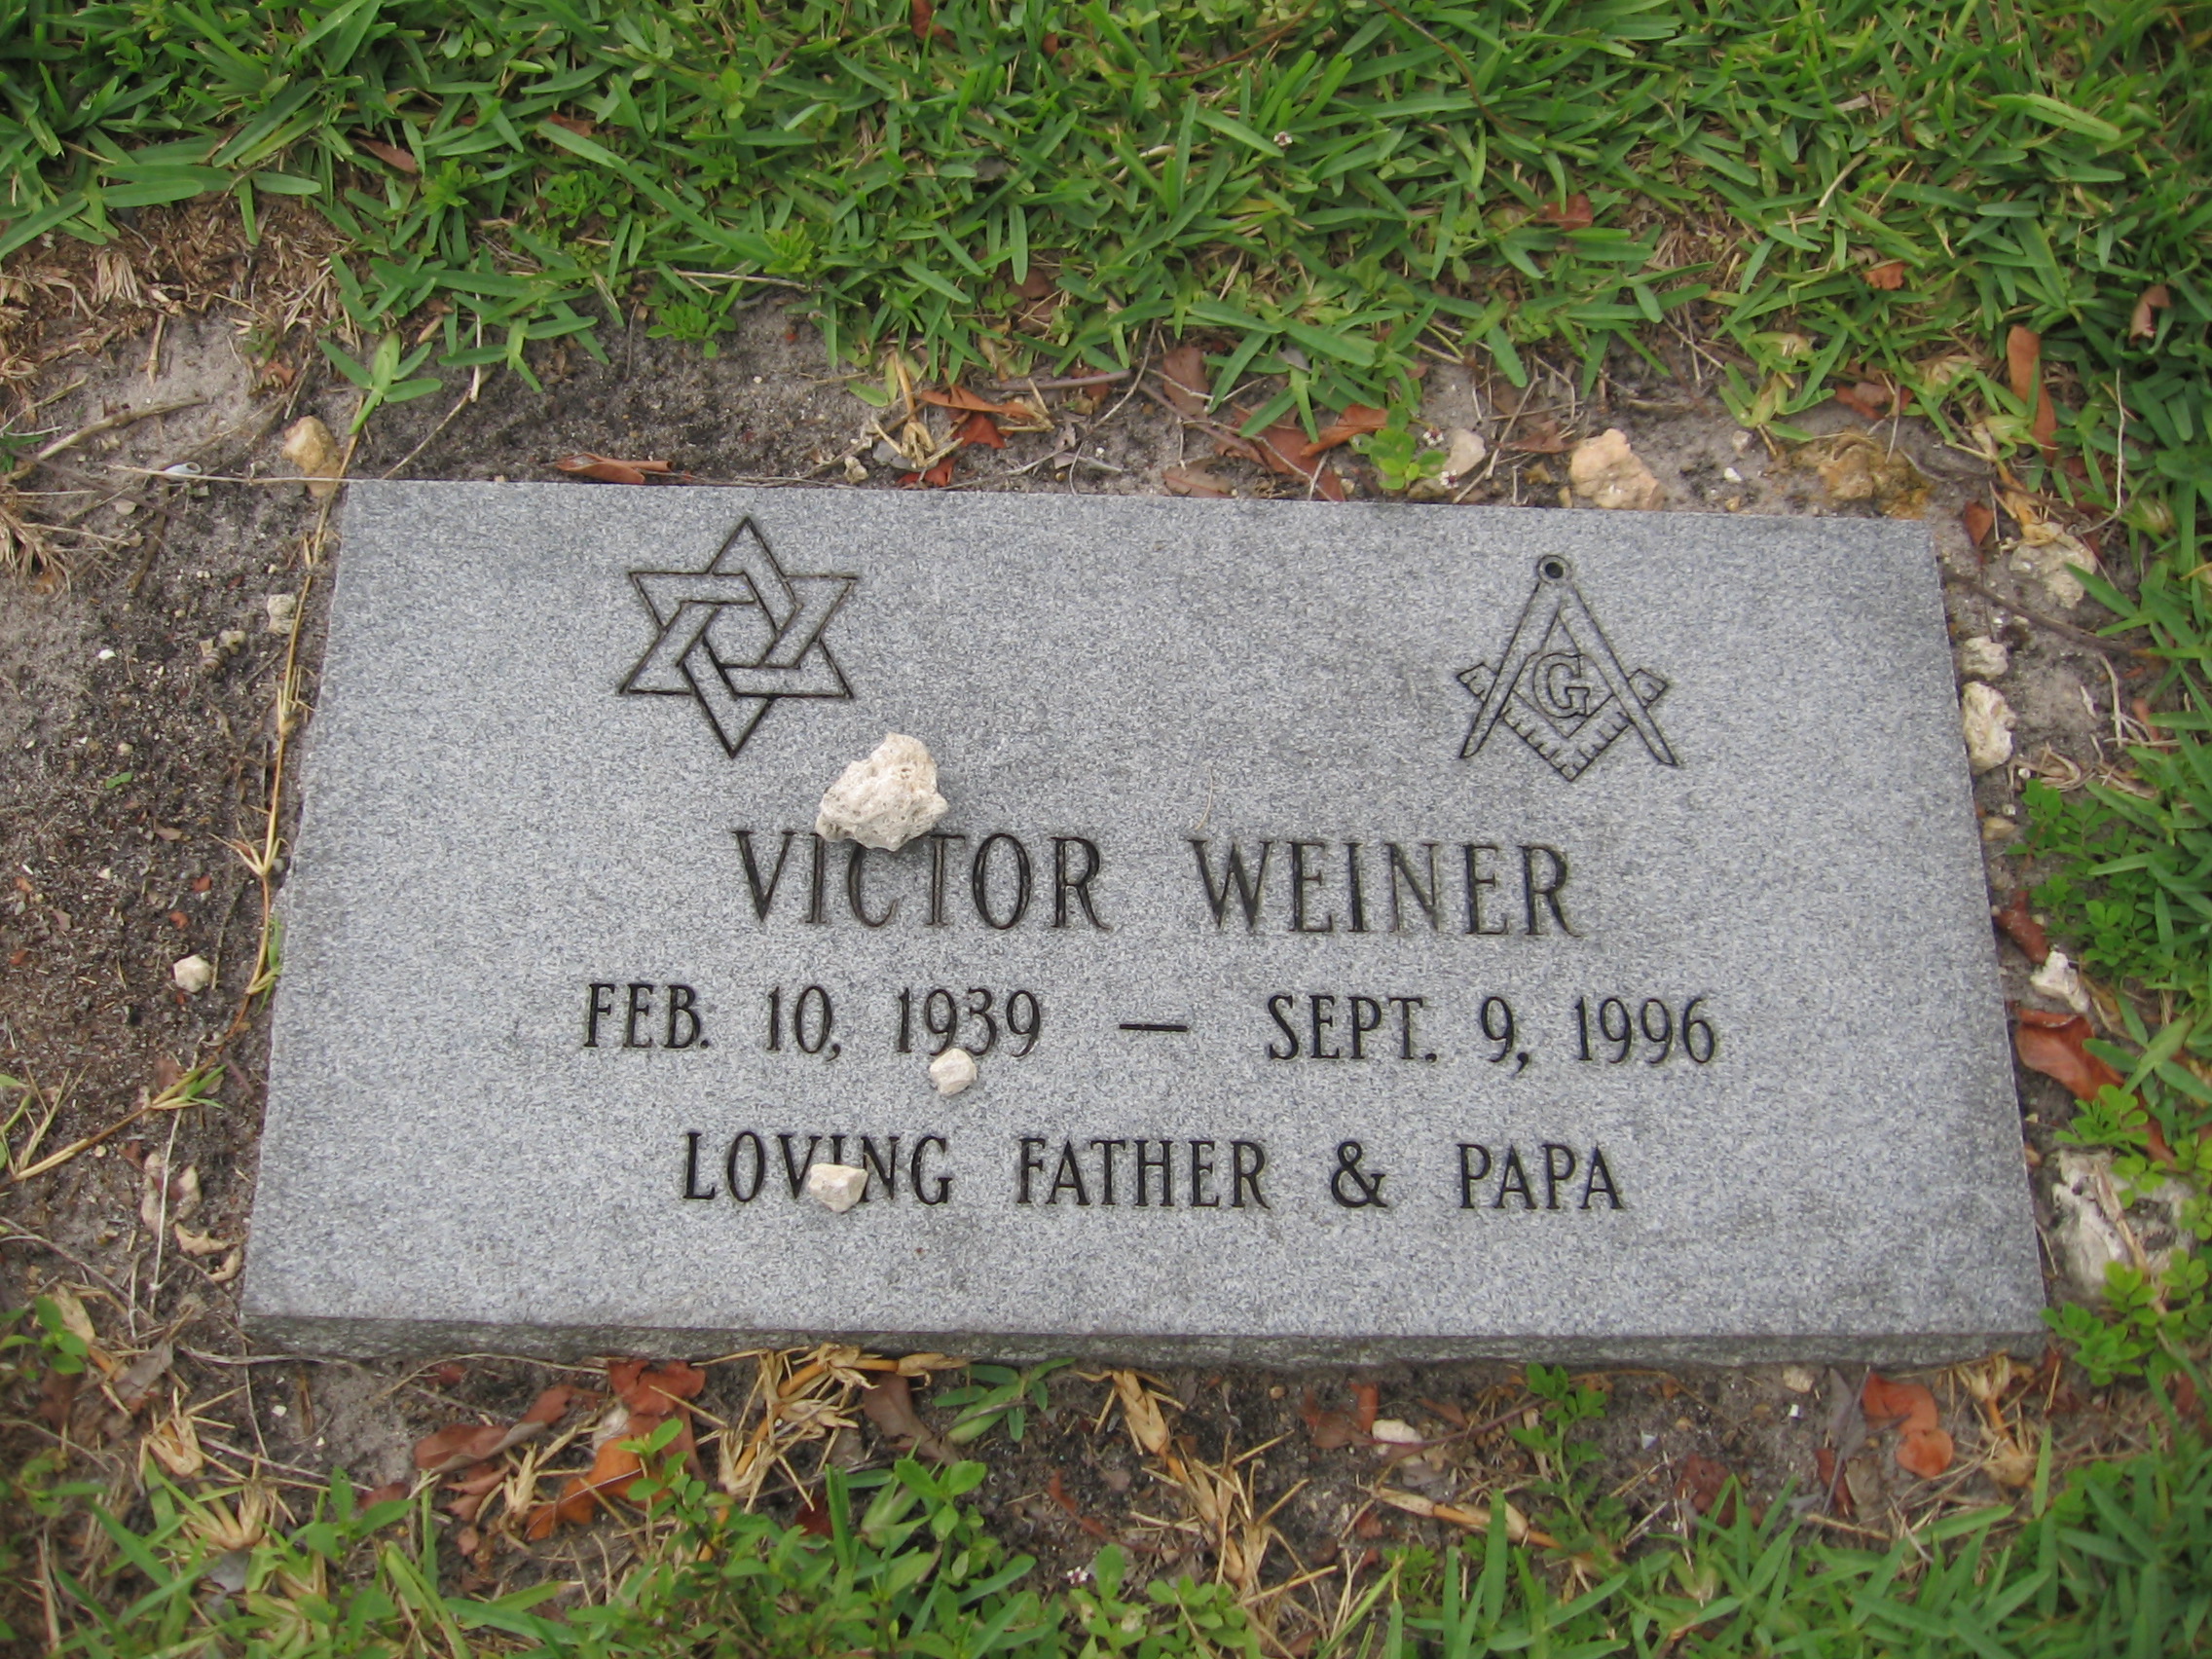 Victor Weiner